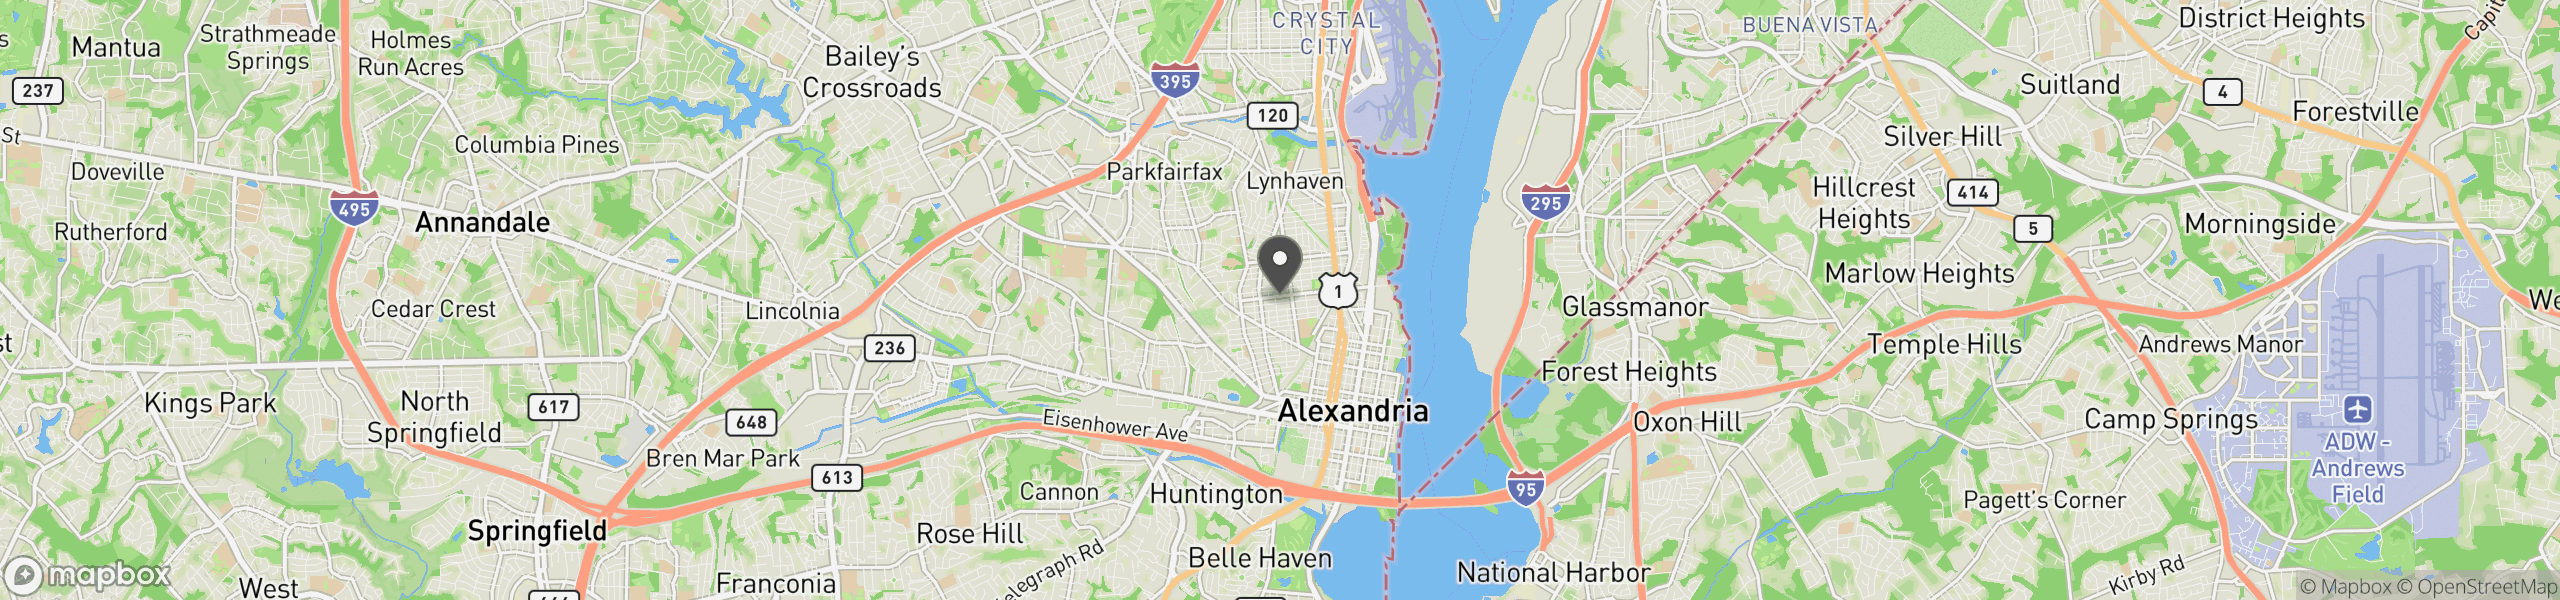 Alexandria, VA 22301